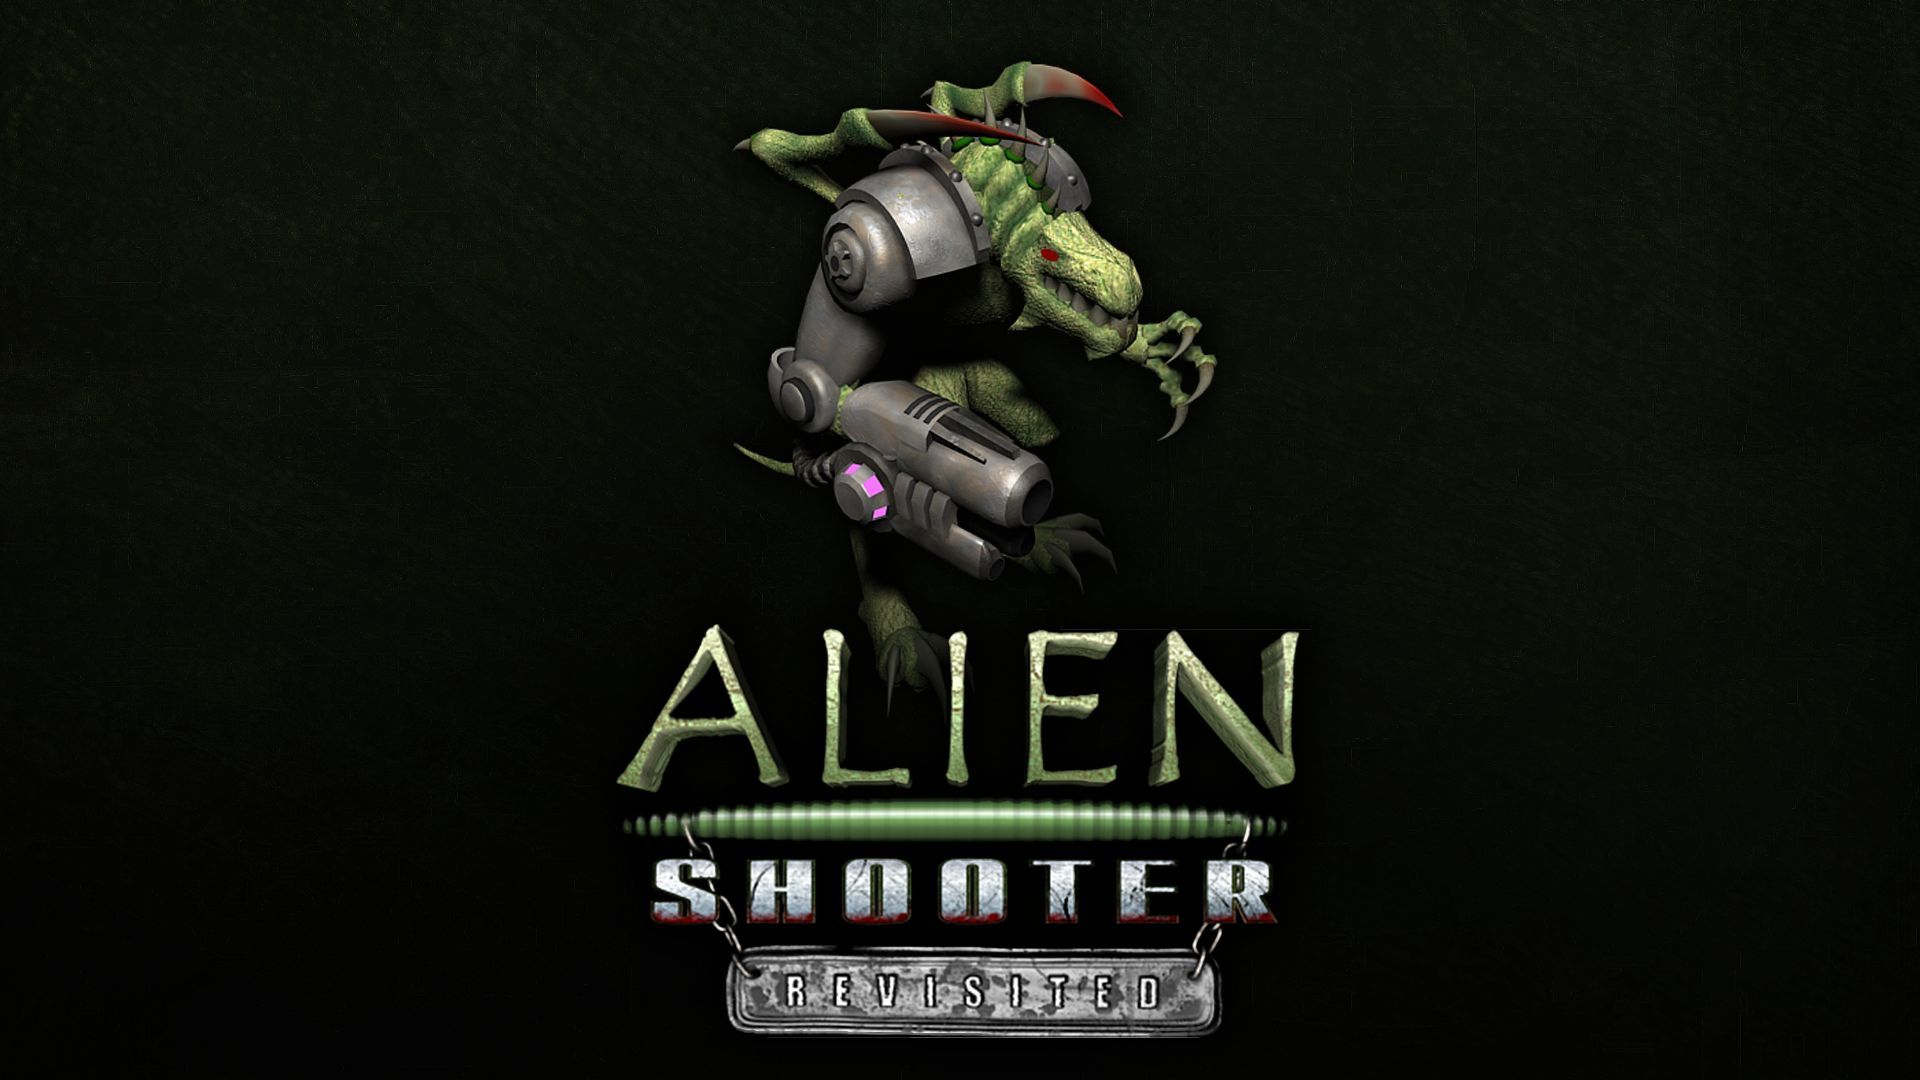 Alien shooter reloaded steam фото 104